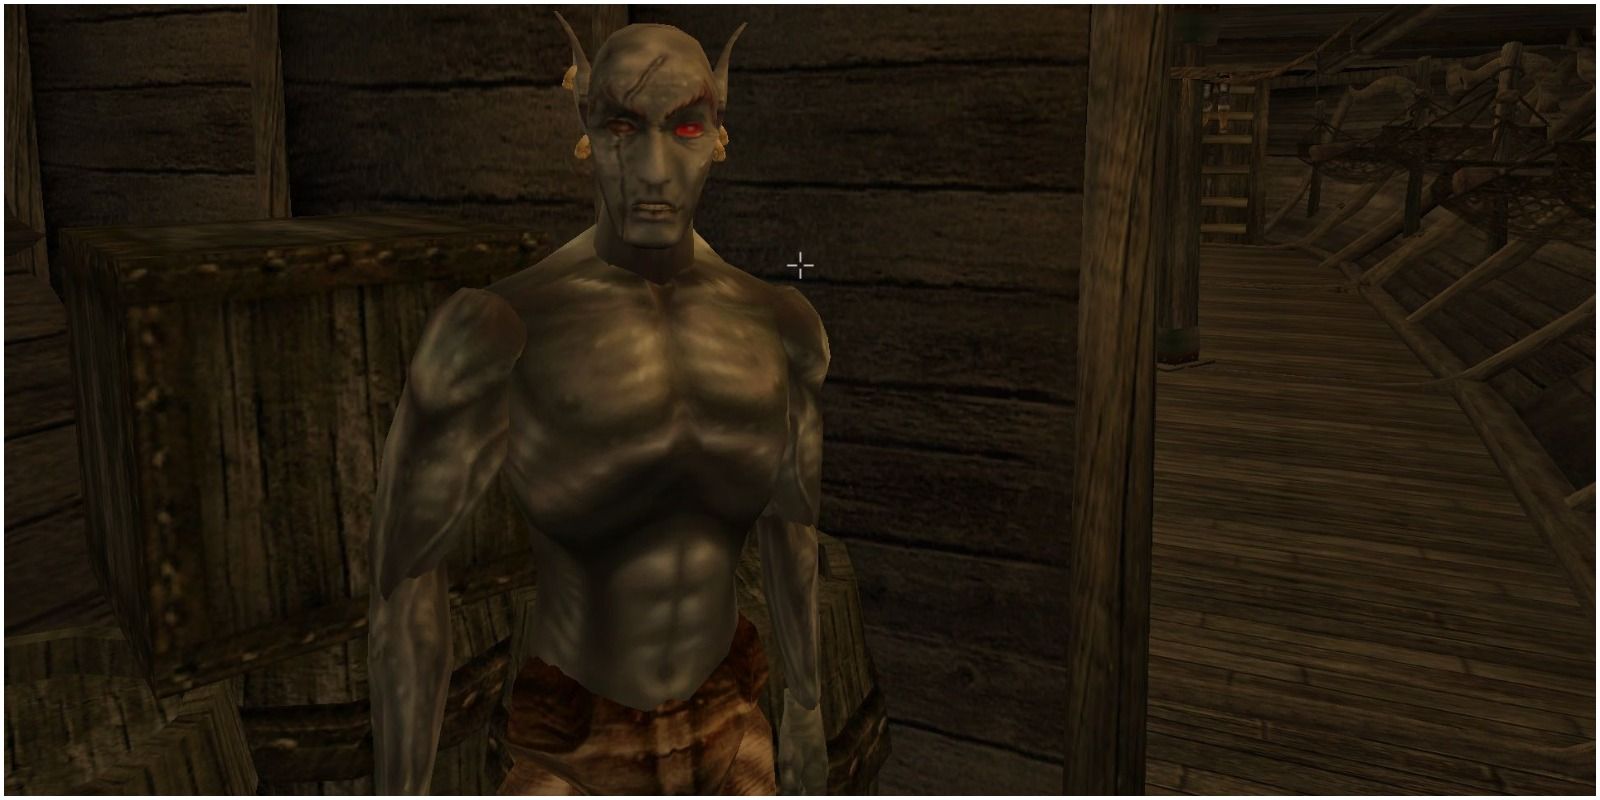 Jiub from Elder Scrolls Morrowind